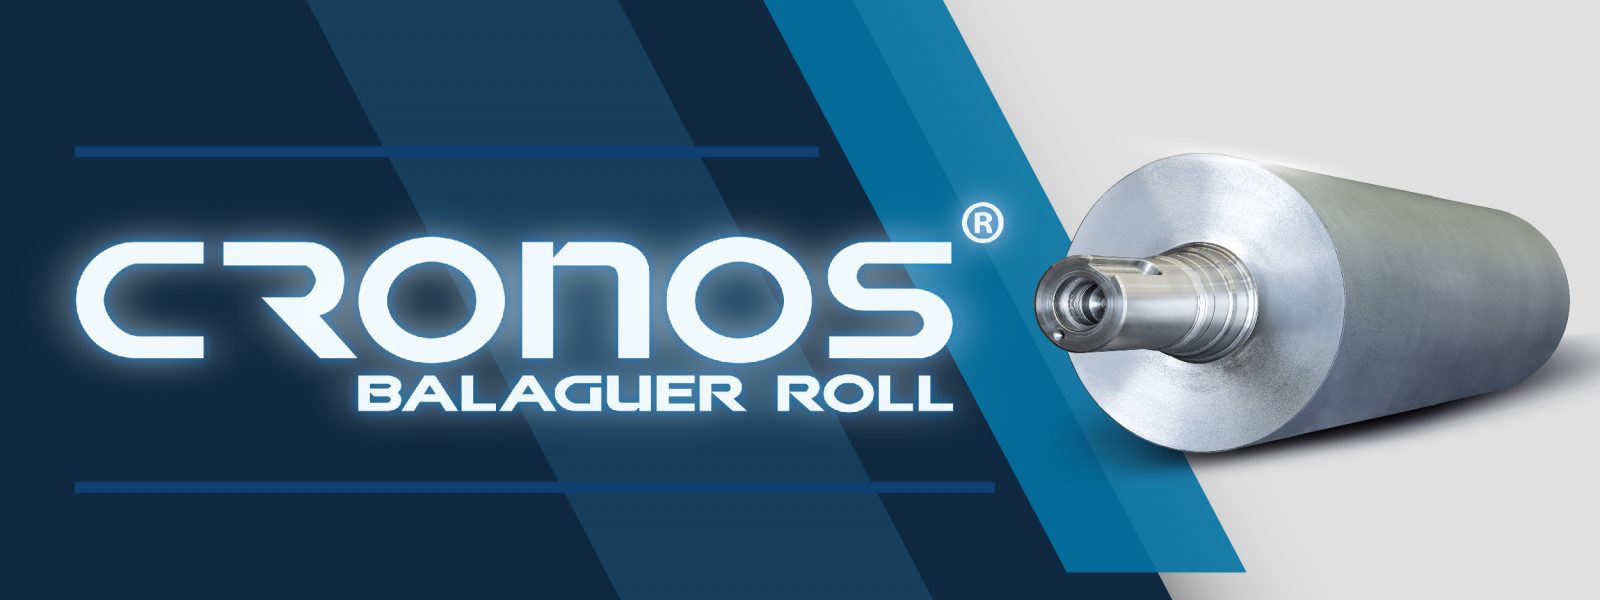 Balaguer Rolls lanza el cilindro de compresión CRONOS